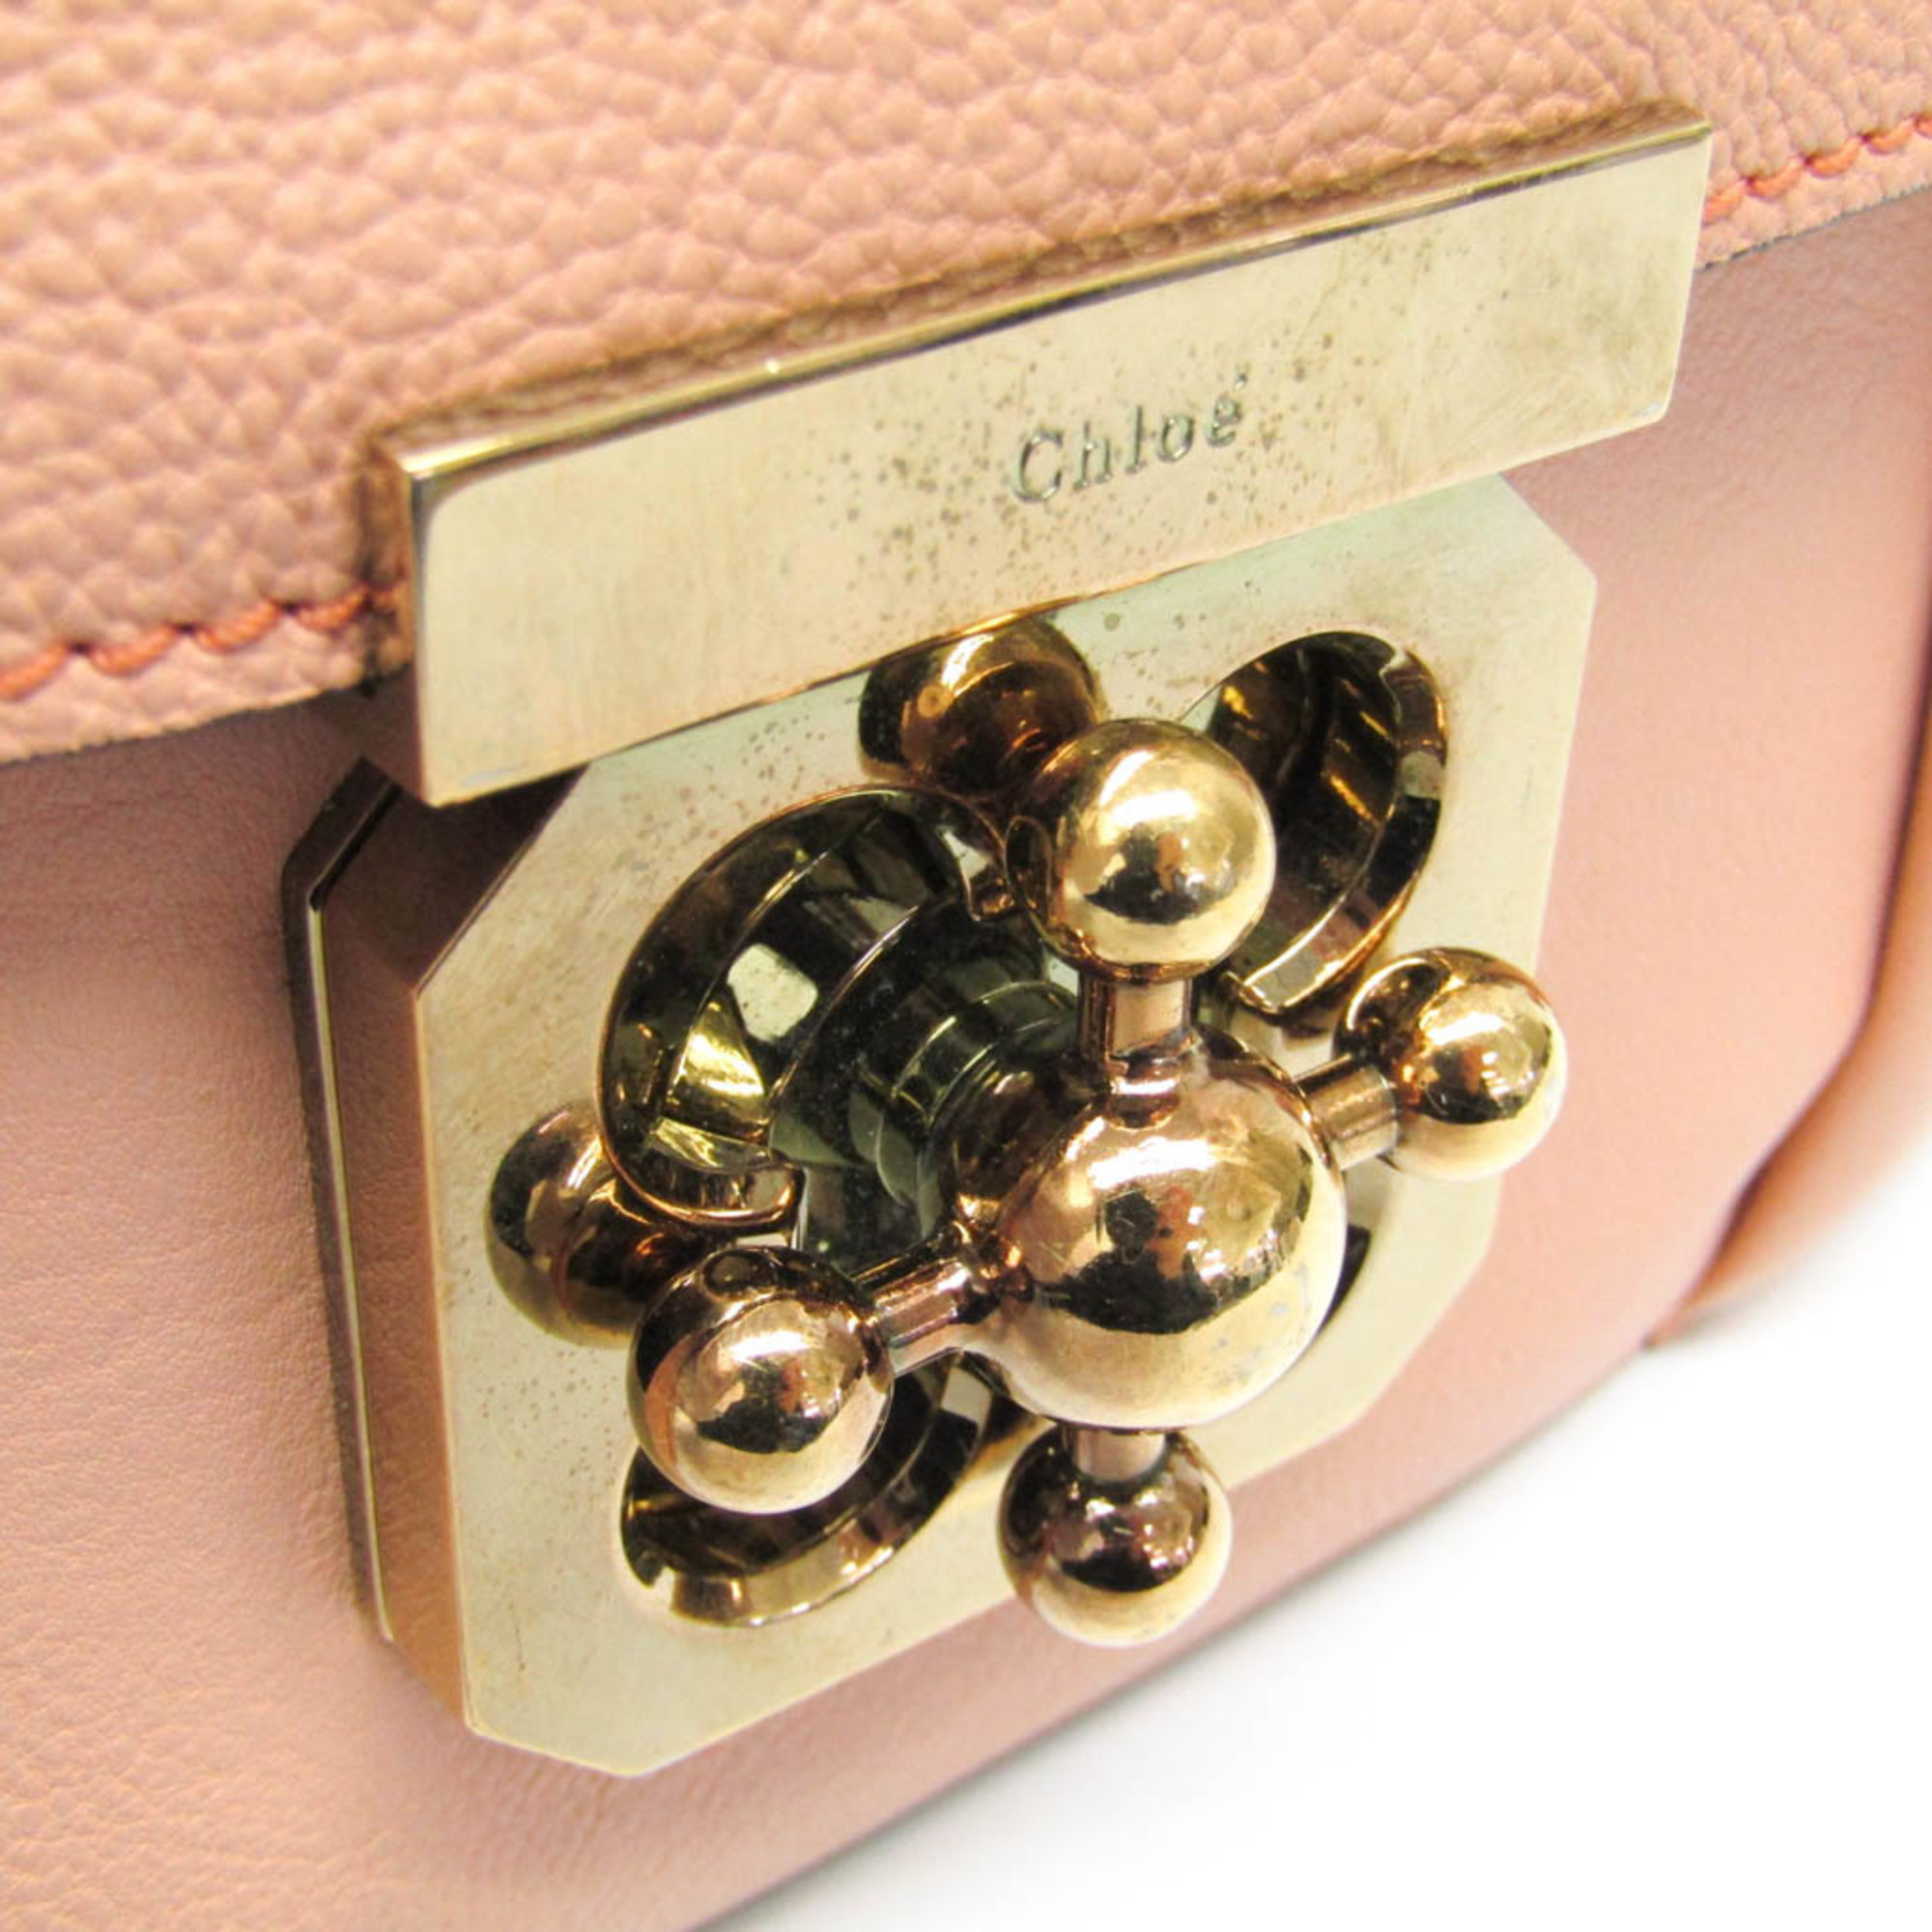 Chloé Elsie Women's Leather Shoulder Bag Coral Pink